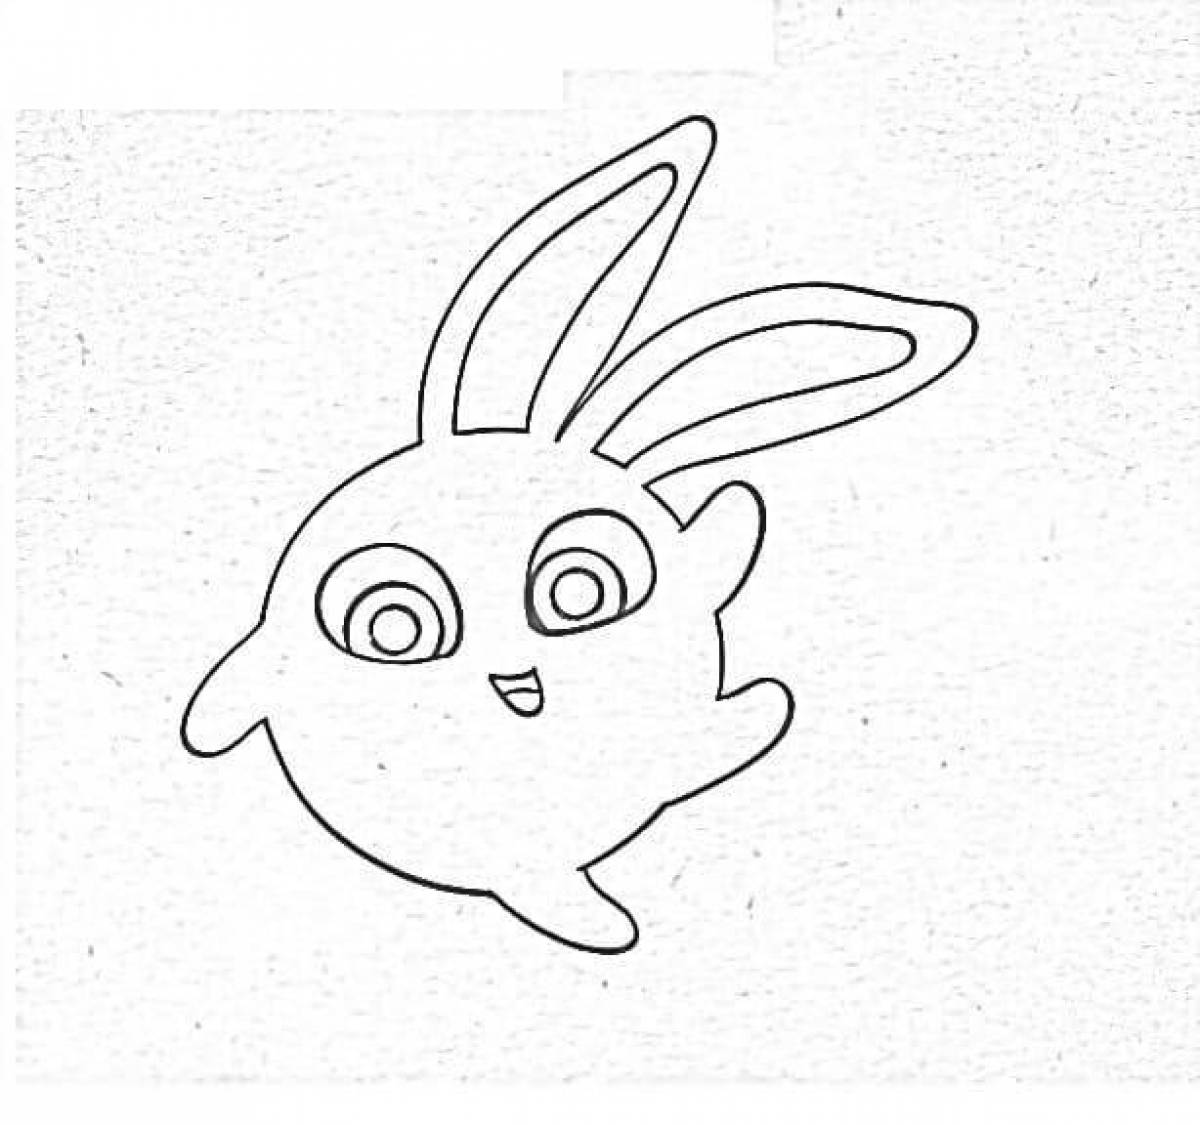 Coloring book sunny bunnies все открыто. Солнечные зайчики раскраска. Солнечный зайчик раскраска для детей. Зайка раскраска для детей. Солнечный звйчики раскраска.